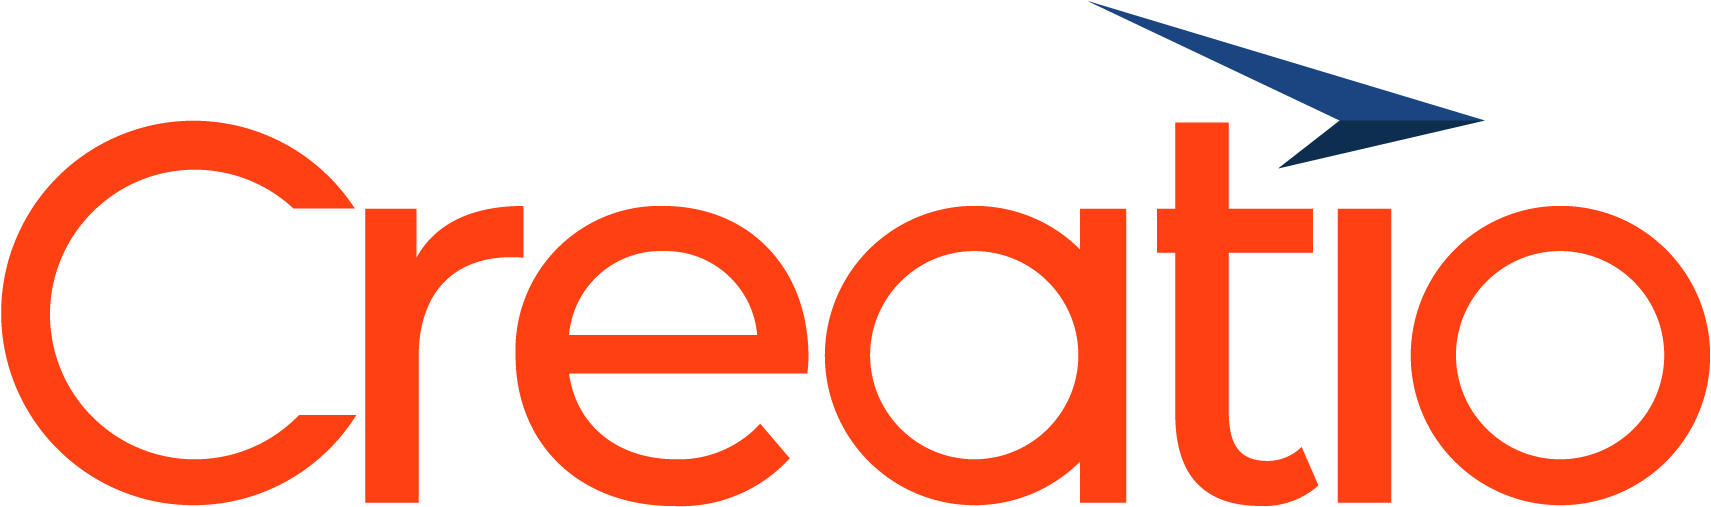 creatio logo